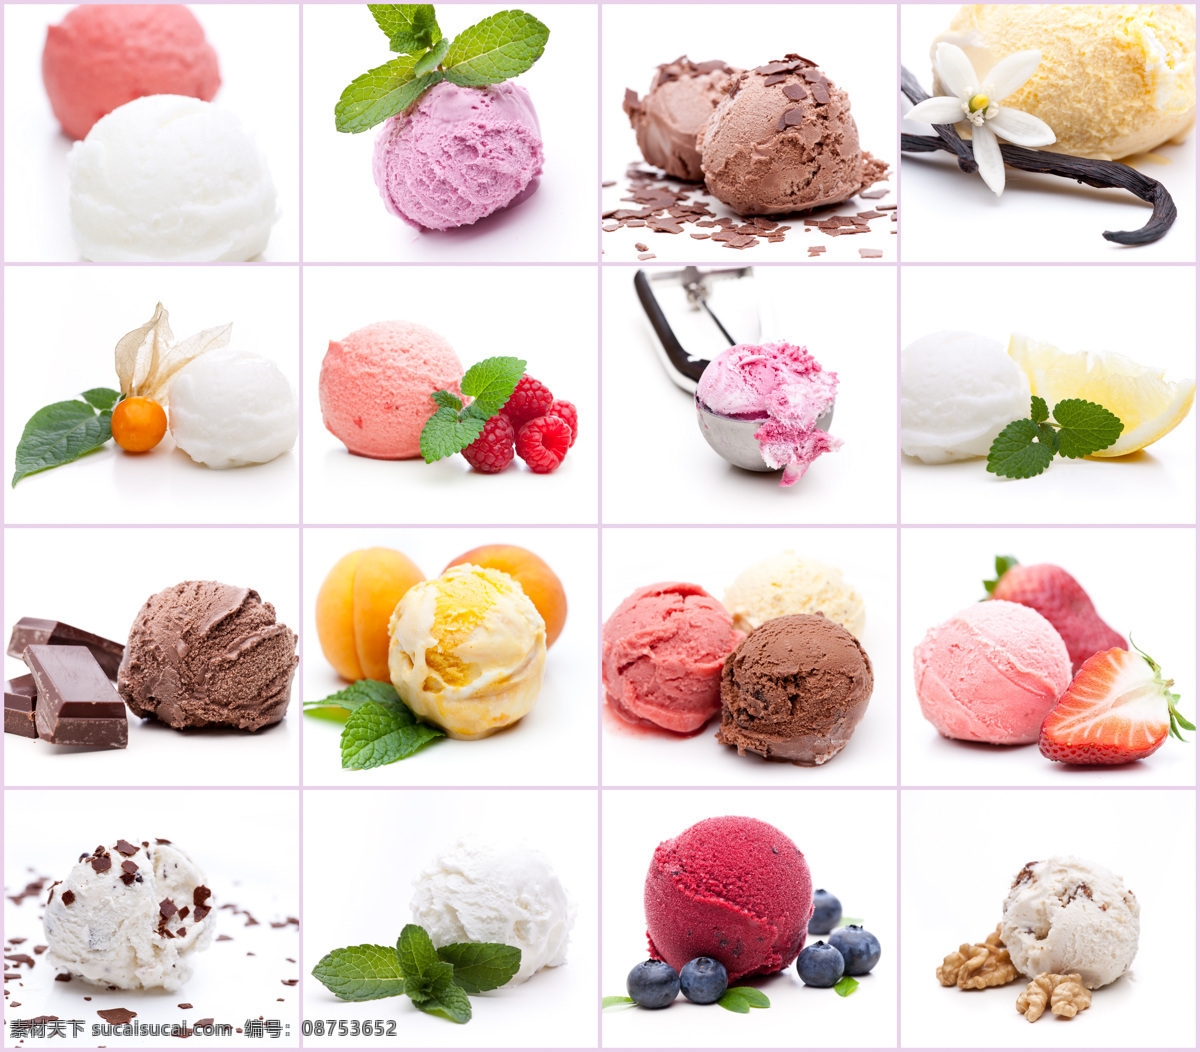 冰激凌 美食 小吃 冰淇淋 雪糕 冷饮 甜品 美工 合成素材 冰品 冰水 饮料酒水 餐饮美食 传统美食